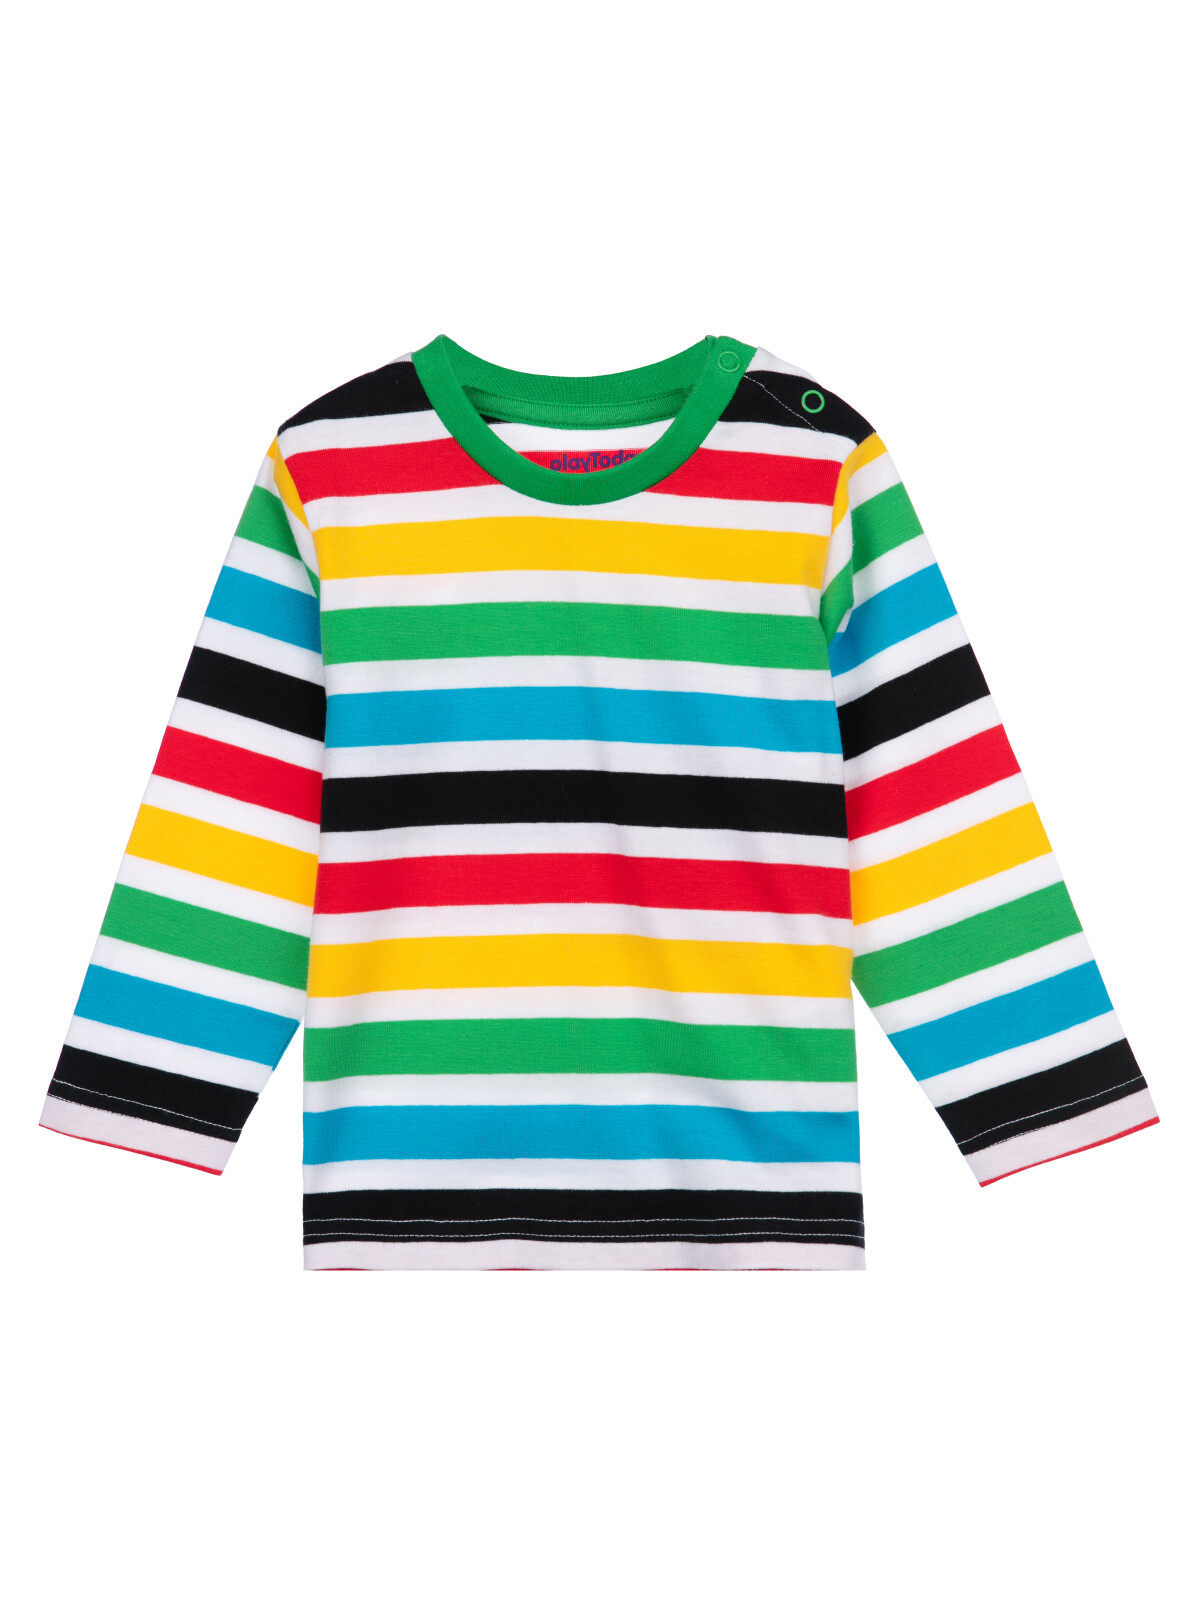 Фуфайка (футболка с длинными рукавами) PlayToday 12419105, разноцветный, 86